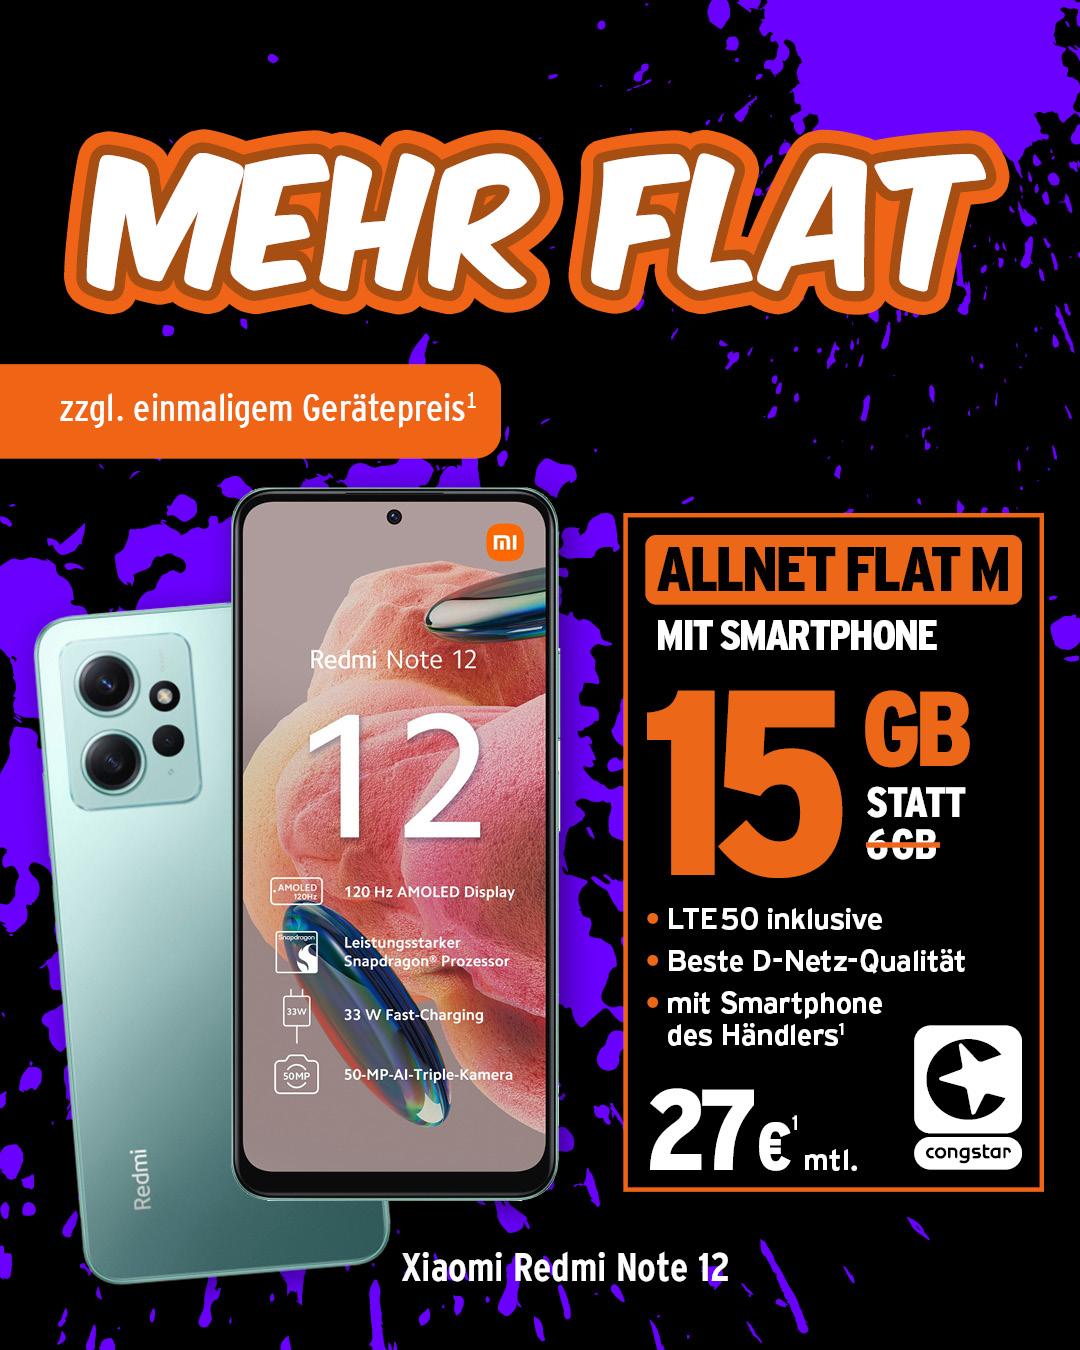 congstar Allnet Flat M und Xiaomi Redmi Note 12